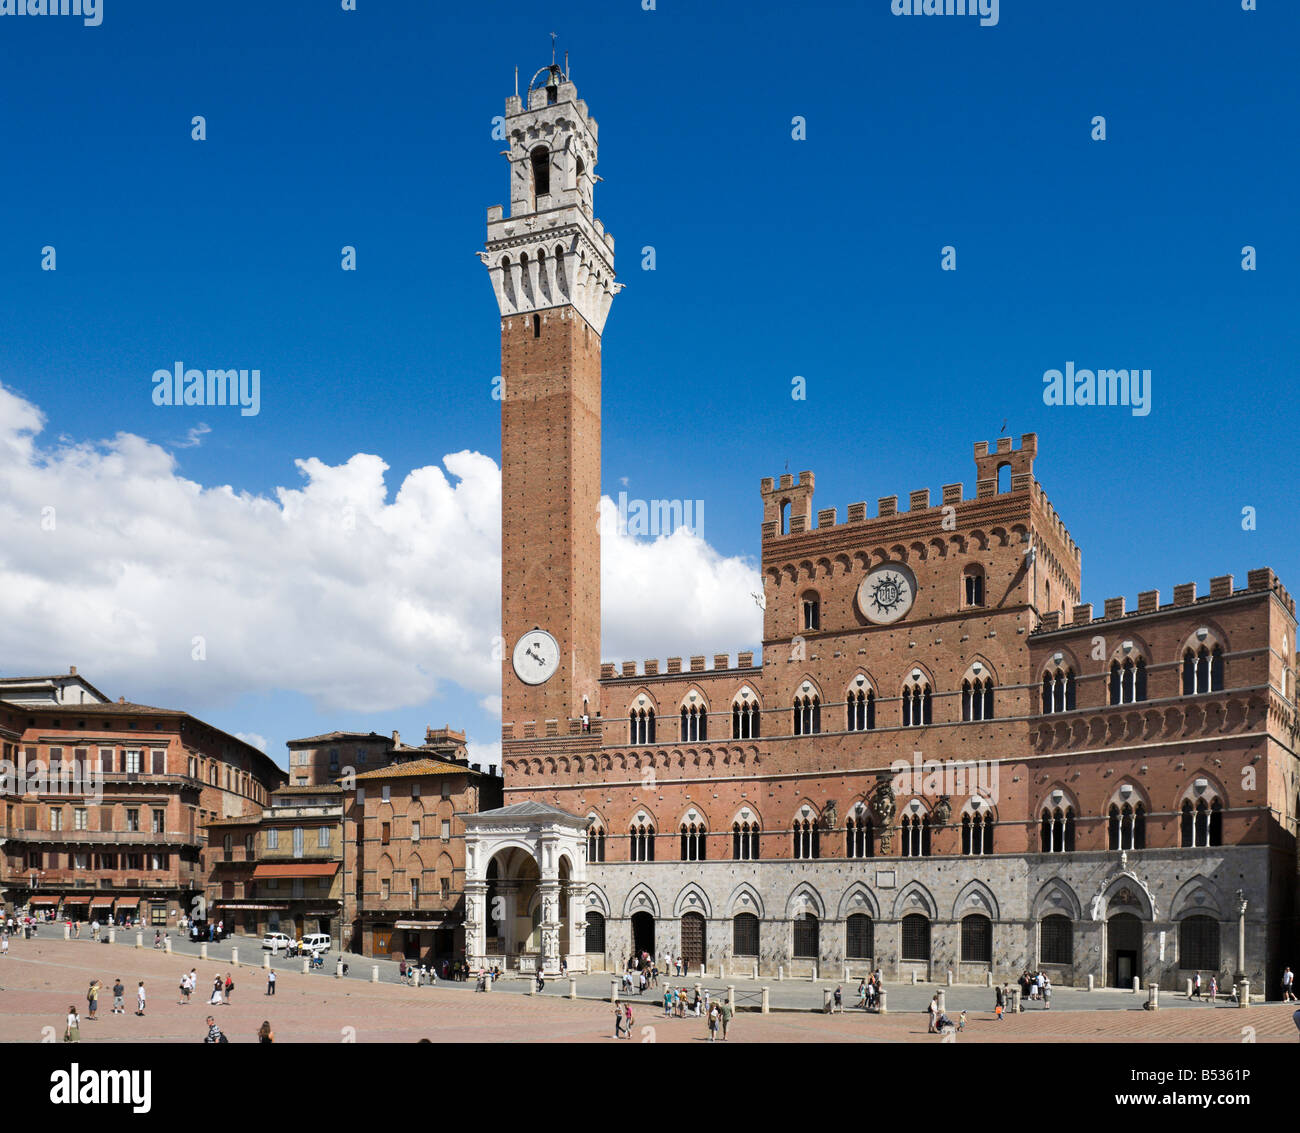 La Torre del Mangia sur le Palazzo Pubblico, dans le Campo, Sienne, Toscane, Italie Banque D'Images